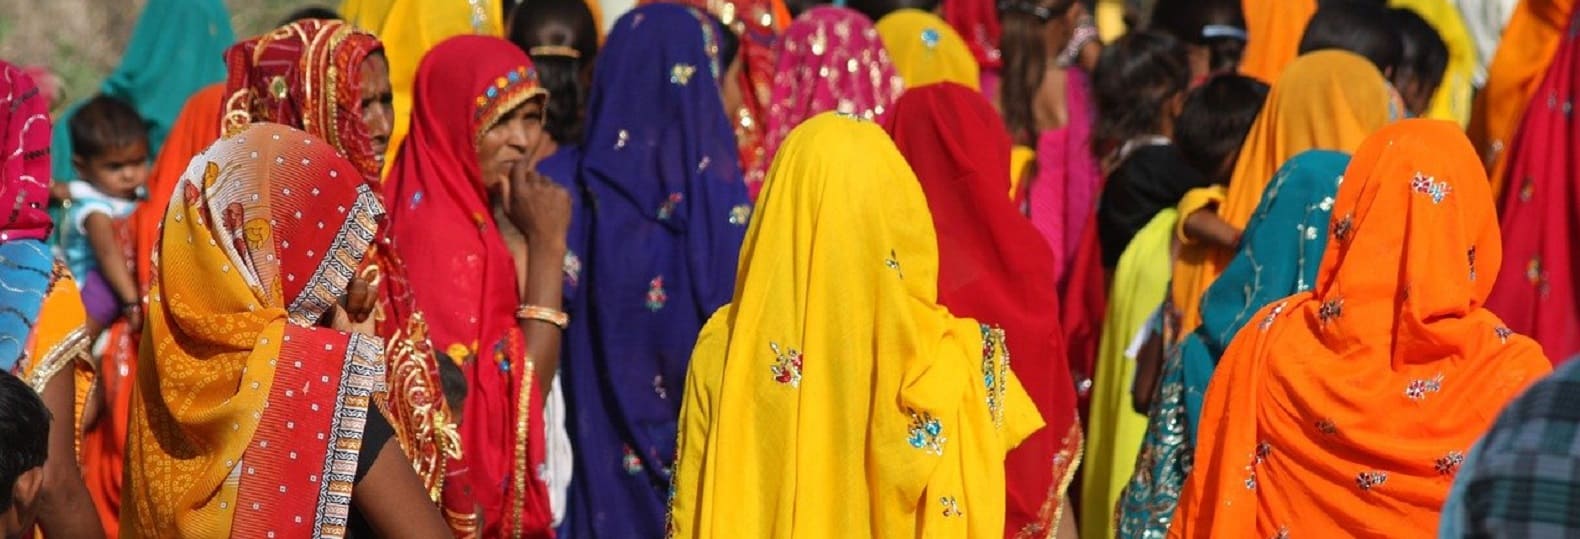 Femme hindoue en Inde lors voyage culturel